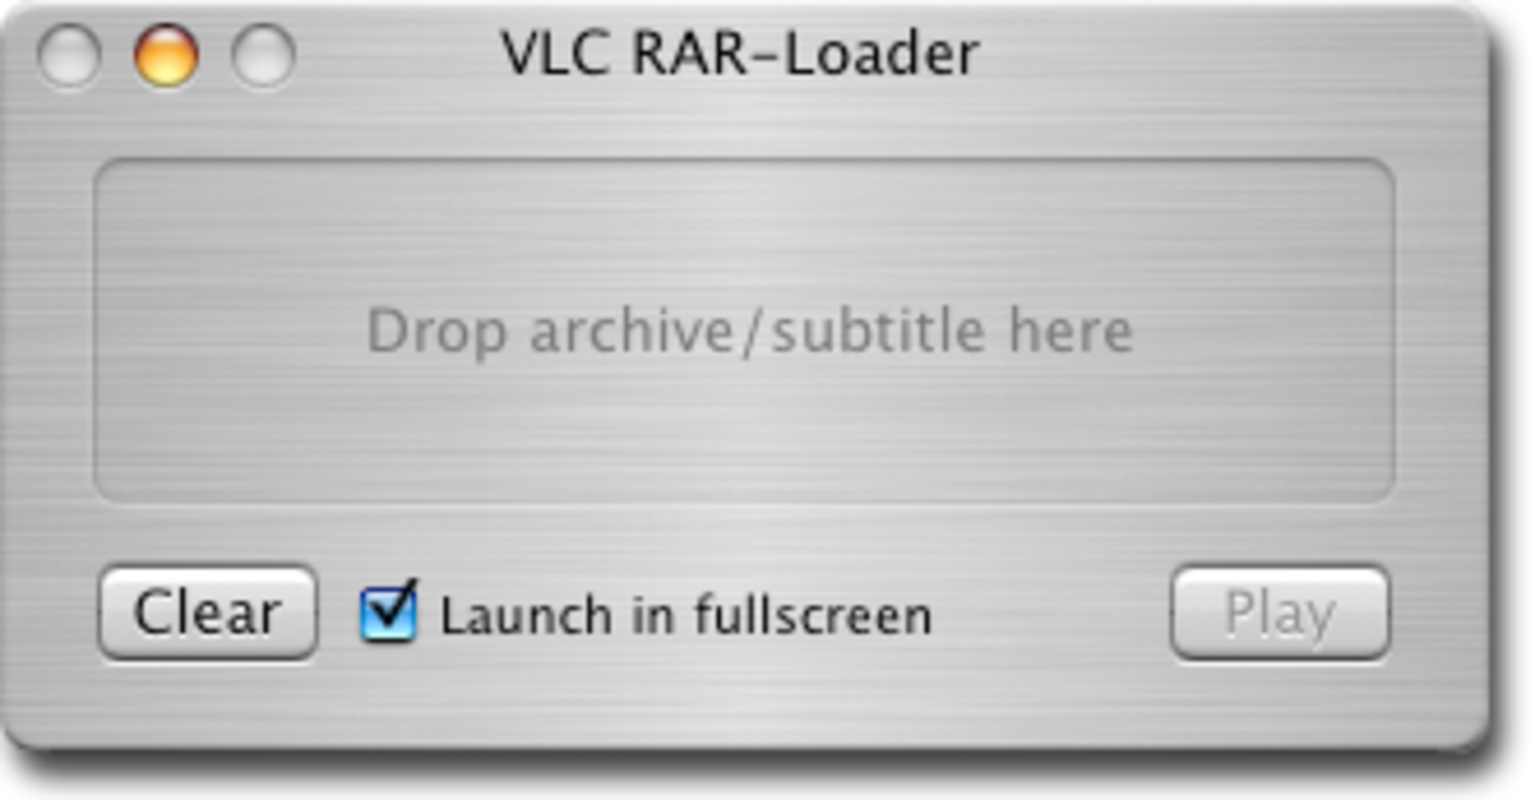 VLC RAR-Loader 1.3 feature